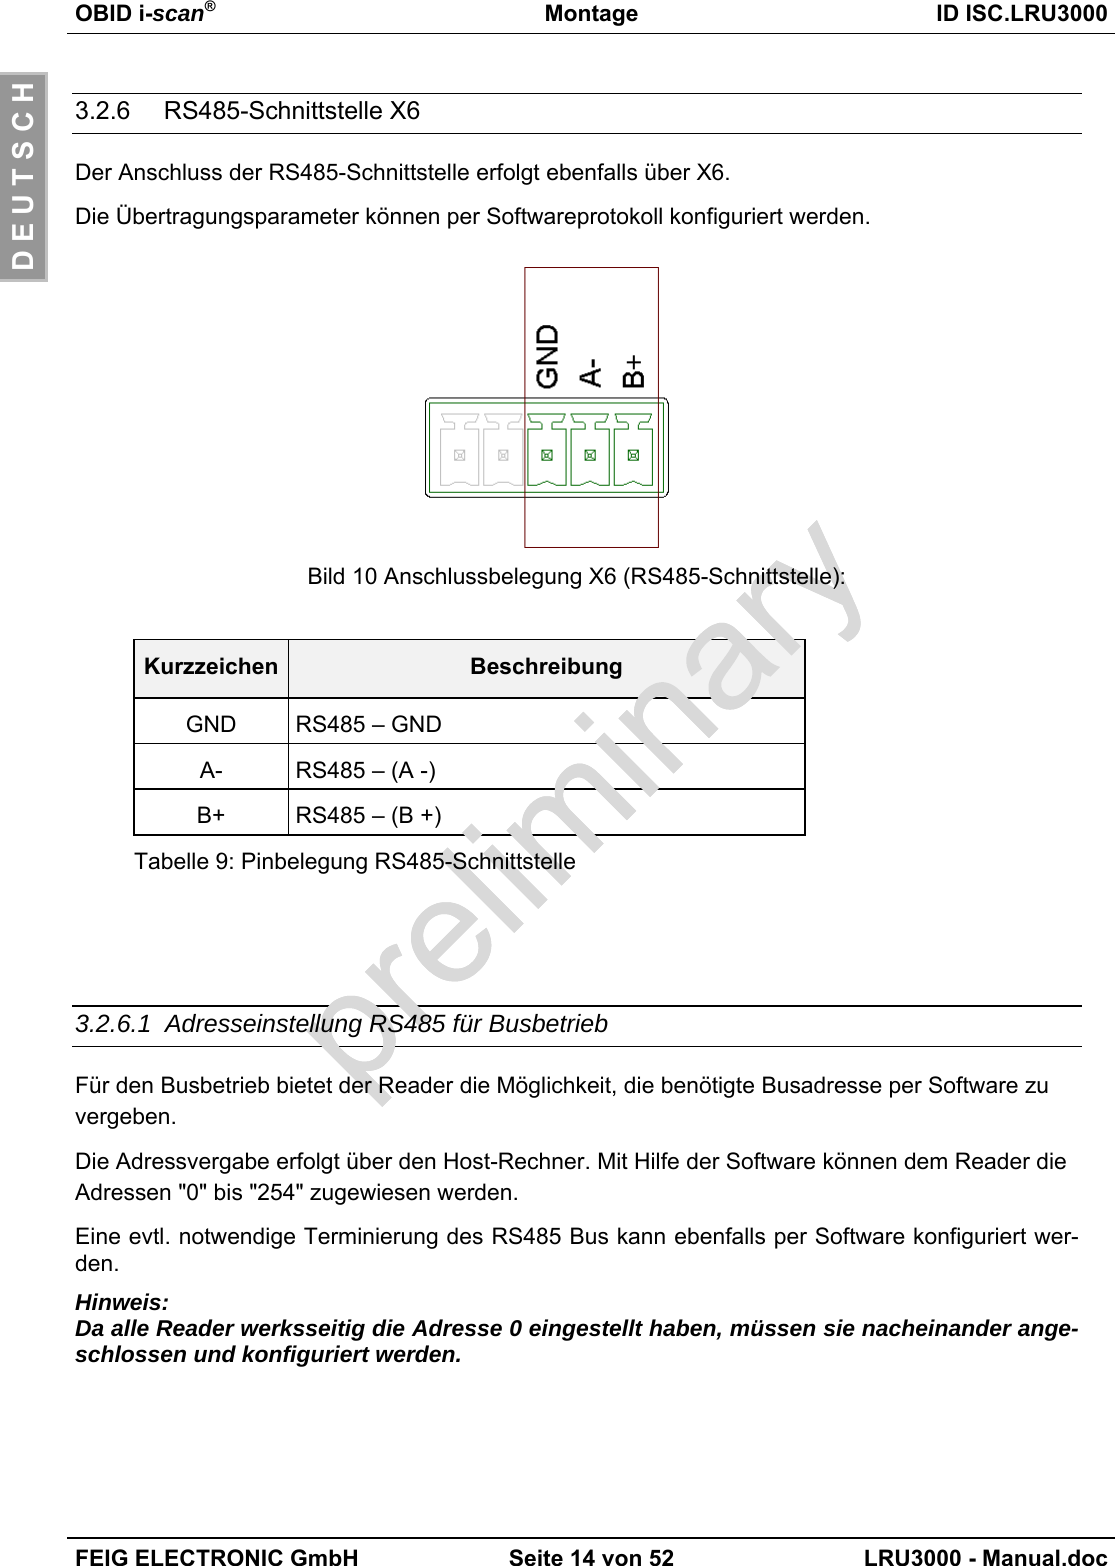 OBID i-scan®Montage ID ISC.LRU3000FEIG ELECTRONIC GmbH Seite 14 von 52 LRU3000 - Manual.docD E U T S C H3.2.6  RS485-Schnittstelle X6Der Anschluss der RS485-Schnittstelle erfolgt ebenfalls über X6.Die Übertragungsparameter können per Softwareprotokoll konfiguriert werden.Bild 10 Anschlussbelegung X6 (RS485-Schnittstelle):Kurzzeichen BeschreibungGND RS485 – GNDA- RS485 – (A -)B+ RS485 – (B +)Tabelle 9: Pinbelegung RS485-Schnittstelle3.2.6.1 Adresseinstellung RS485 für BusbetriebFür den Busbetrieb bietet der Reader die Möglichkeit, die benötigte Busadresse per Software zuvergeben.Die Adressvergabe erfolgt über den Host-Rechner. Mit Hilfe der Software können dem Reader dieAdressen &quot;0&quot; bis &quot;254&quot; zugewiesen werden.Eine evtl. notwendige Terminierung des RS485 Bus kann ebenfalls per Software konfiguriert wer-den.Hinweis:Da alle Reader werksseitig die Adresse 0 eingestellt haben, müssen sie nacheinander ange-schlossen und konfiguriert werden.